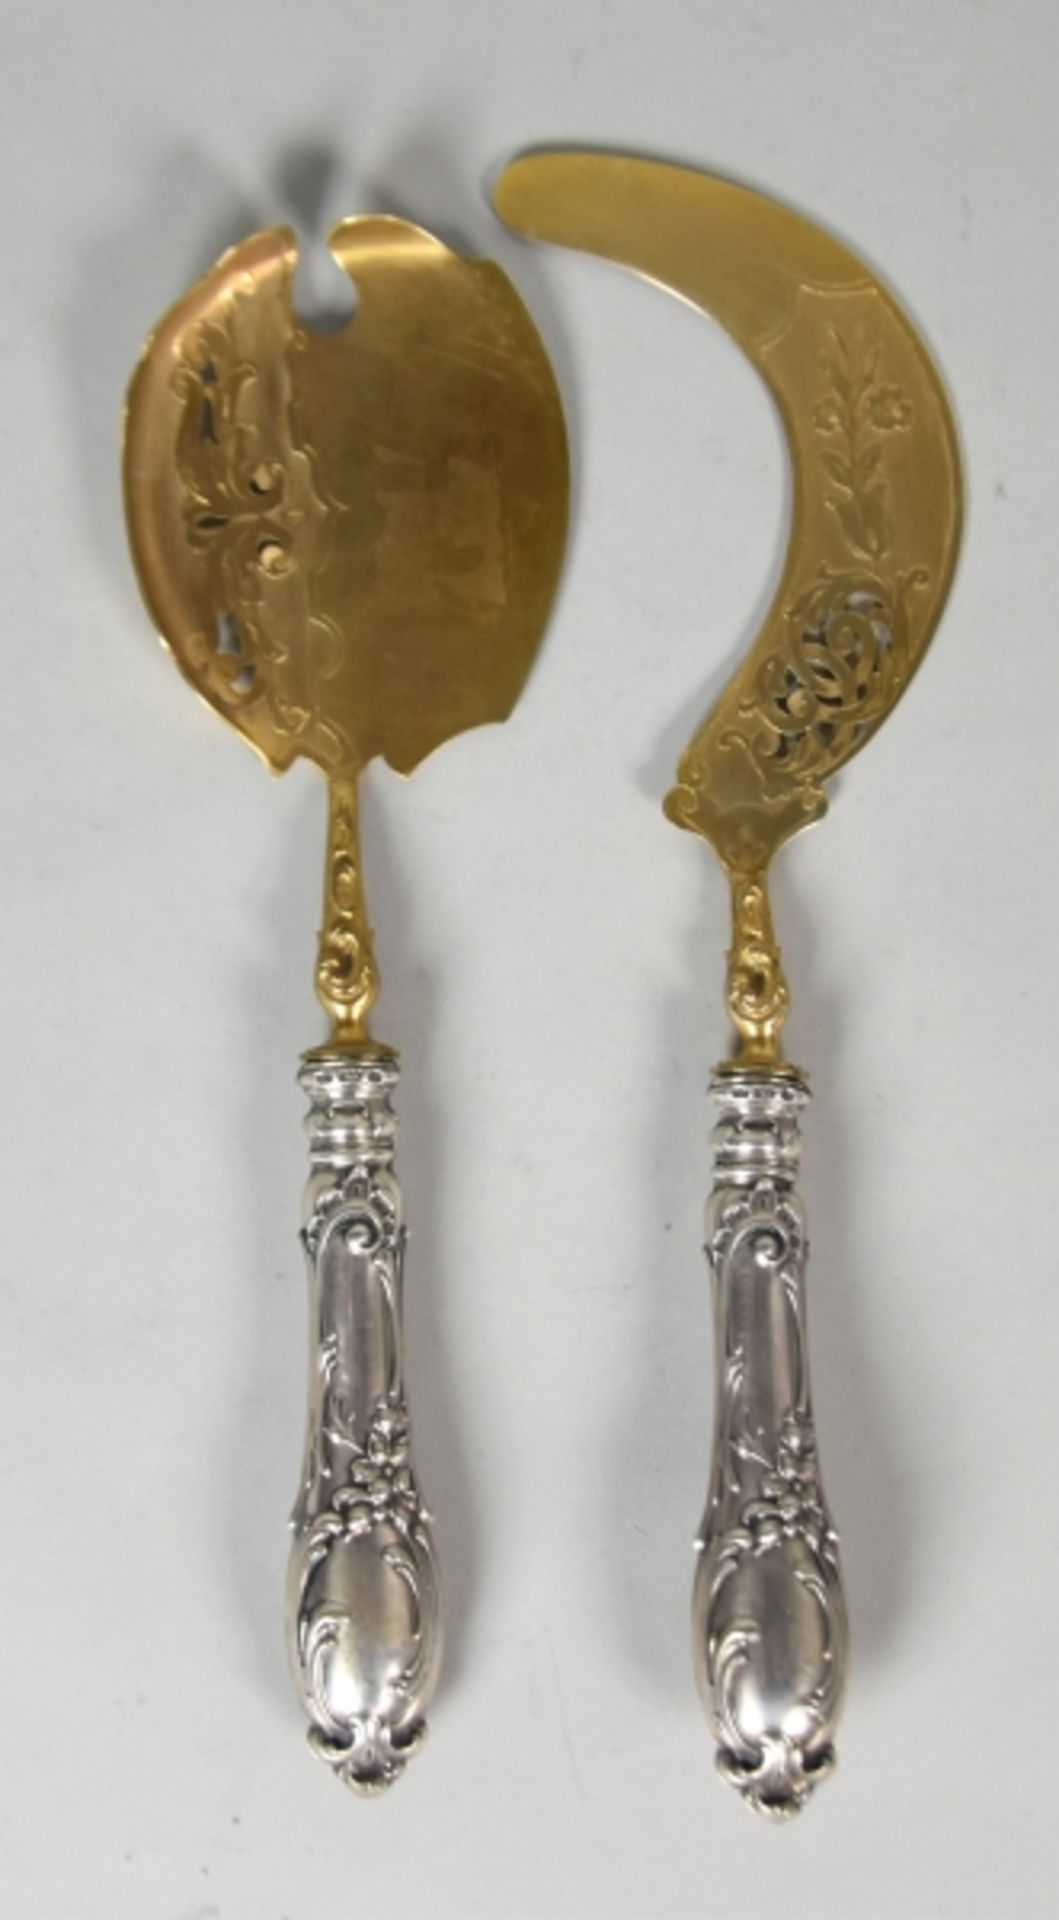 VORLEGEBESTECK FÜR EIS Eissichel und Eisheber, floraler Dekor, teilweise vergoldet, Silber 800,